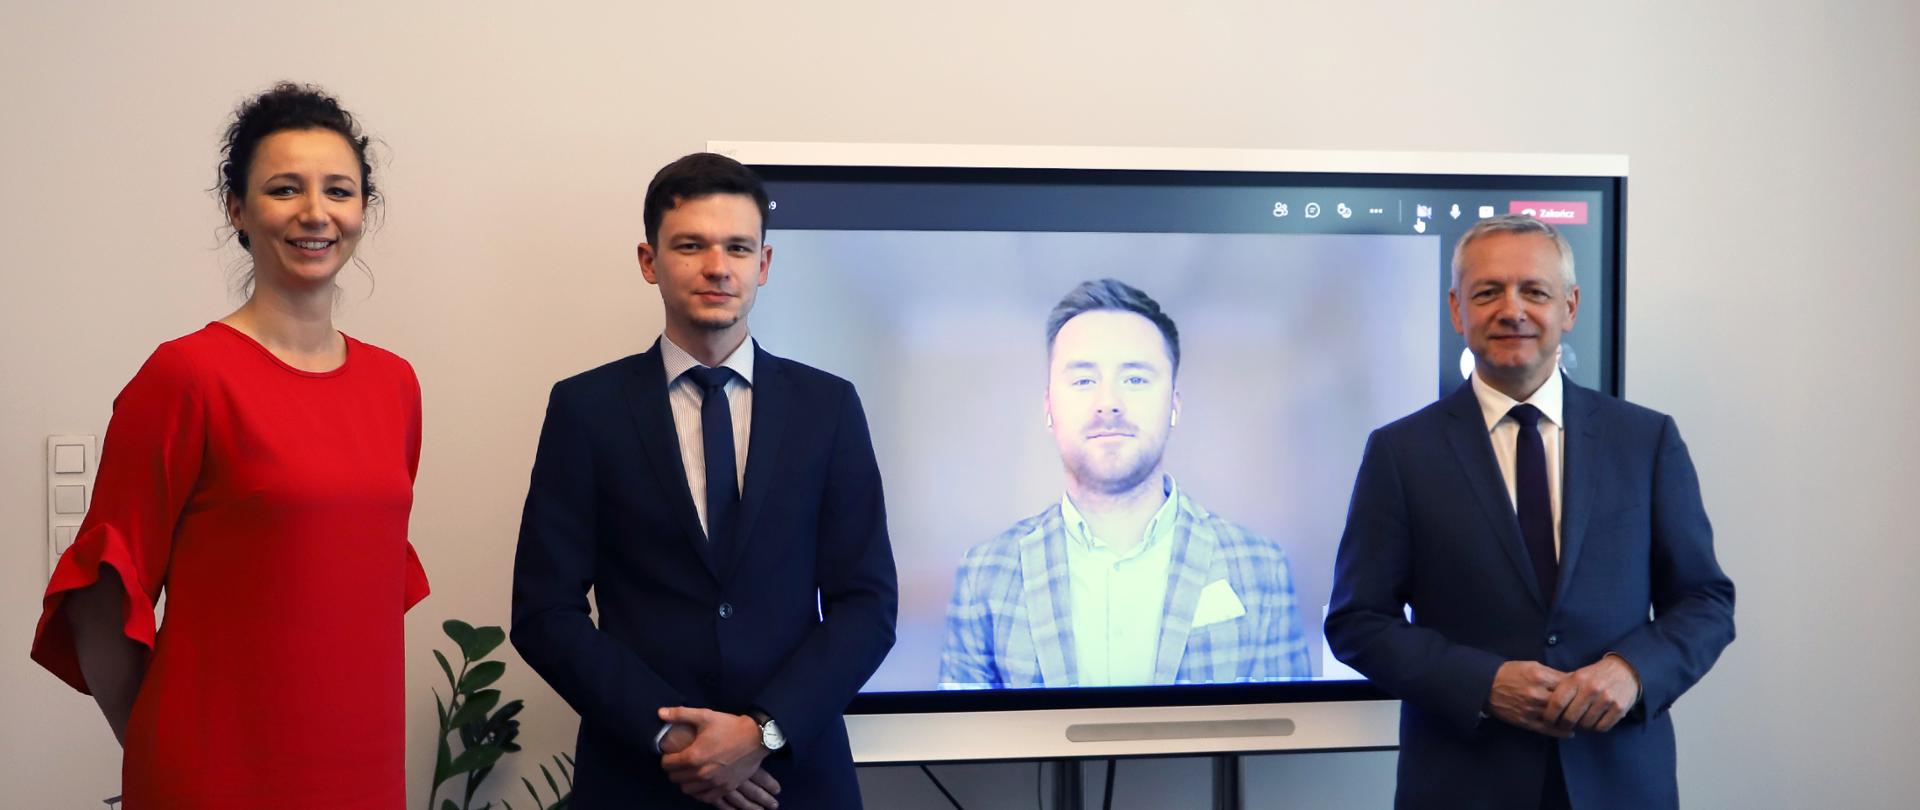 Zdjęcie - trzy osoby stoją przed ekranem do wideokonferencji, jedna widoczna na ekranie. Od lewej: Izabela Albrycht, Łukasz Gawron, na ekranie - Robert Siudak. Z prawej strony ekranu - minister Marek Zagórski.